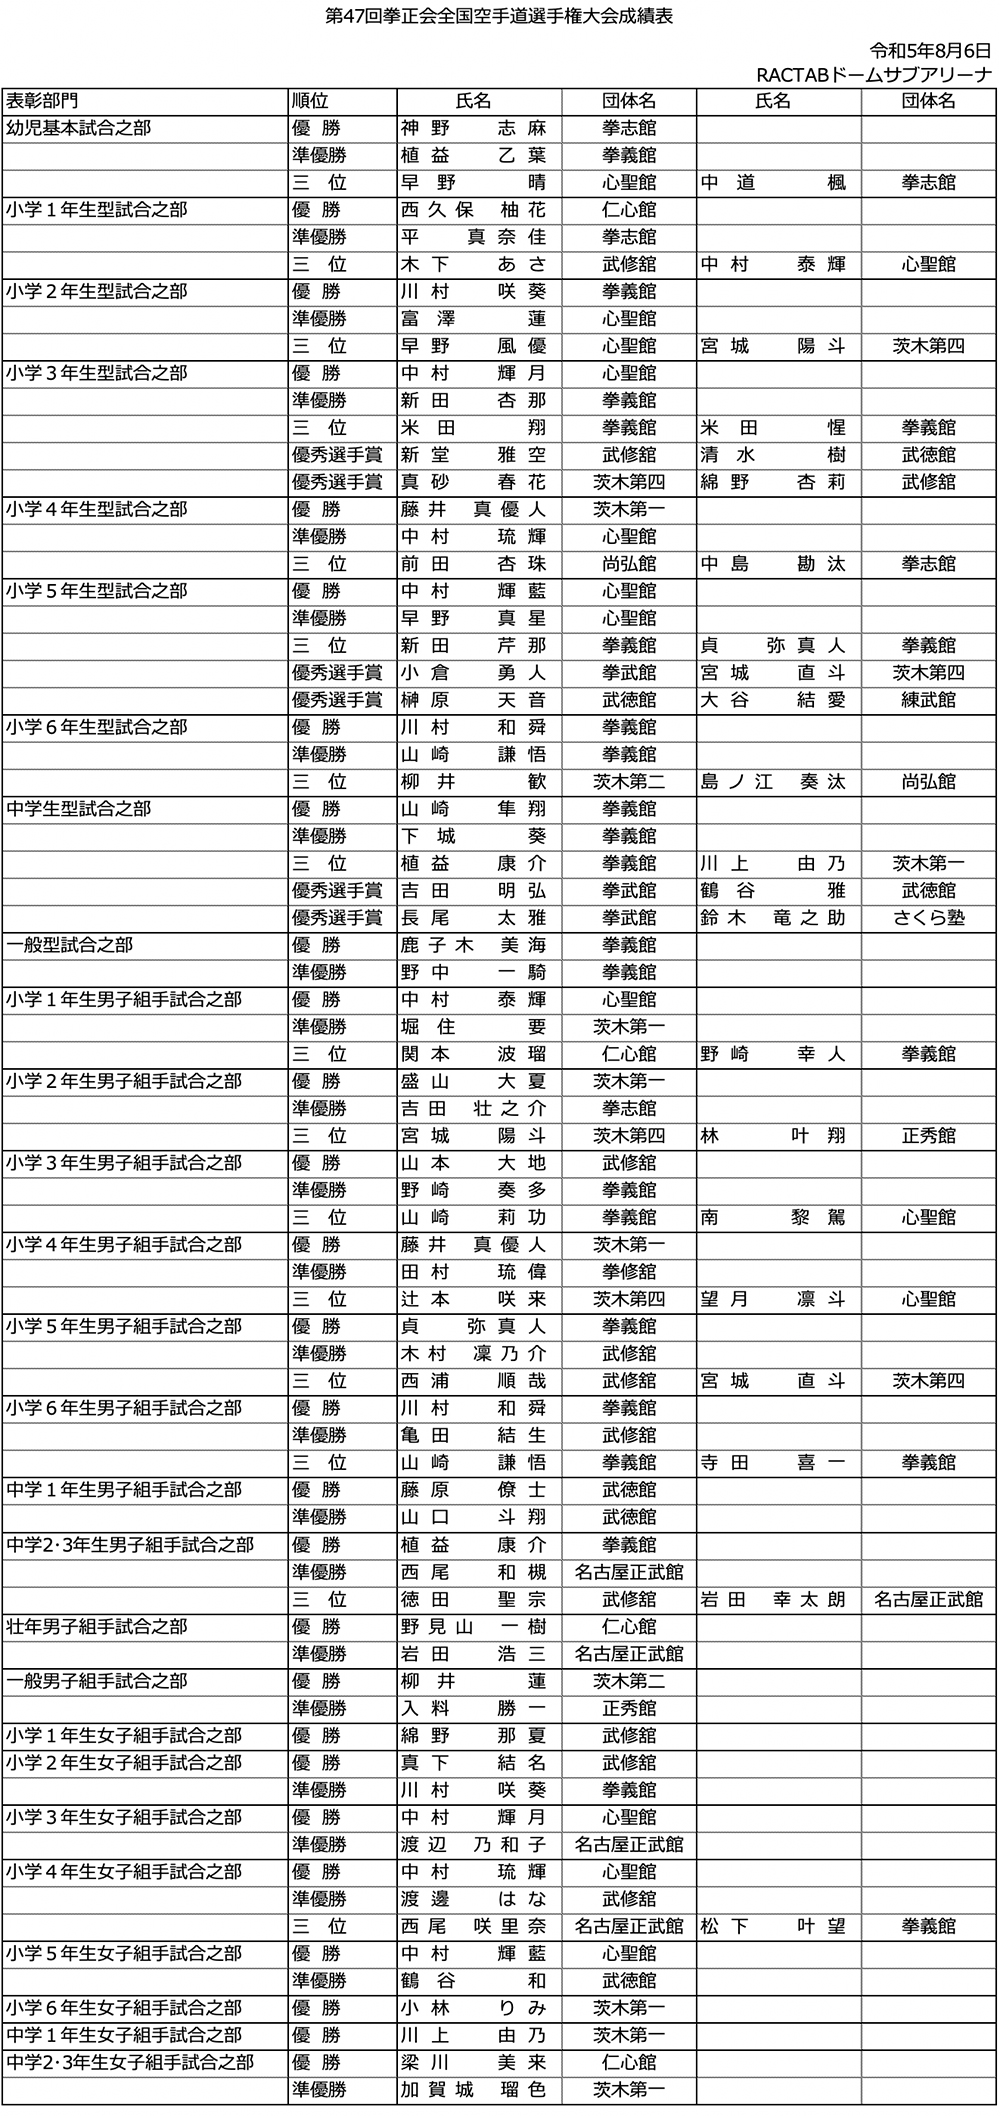 第47回拳正会全国空手道選手権大会成績表